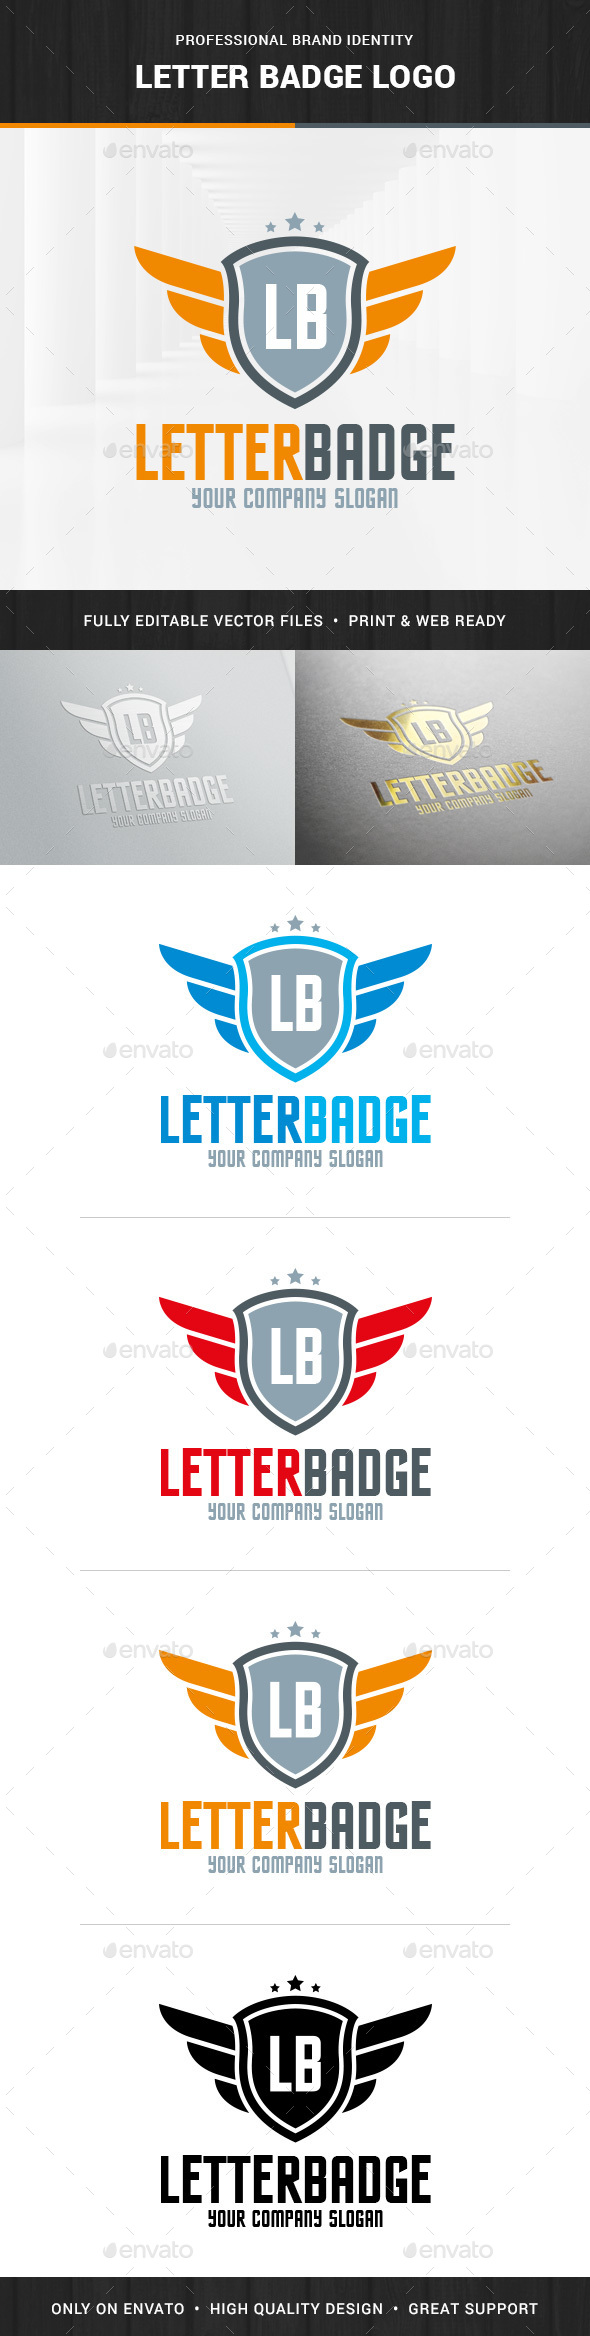 Letter Badge Logo Template